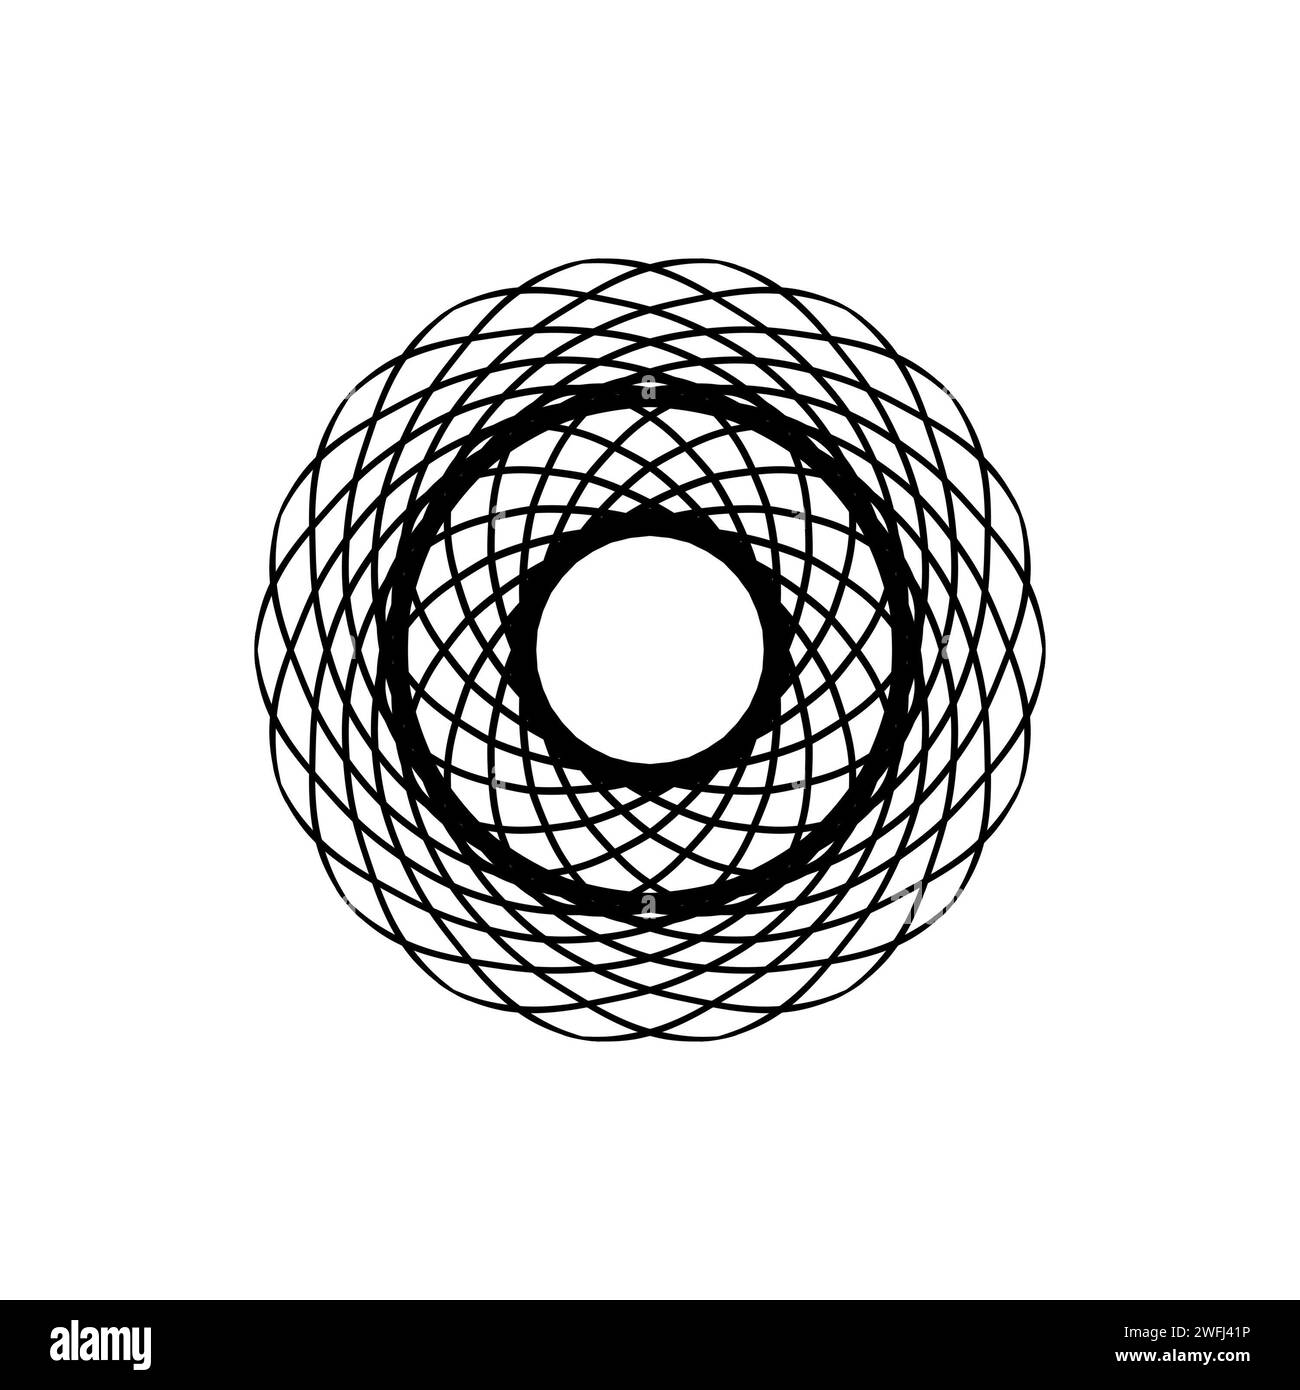 Impression de cercle monochrome avec motif à l'intérieur isolé sur fond blanc Banque D'Images